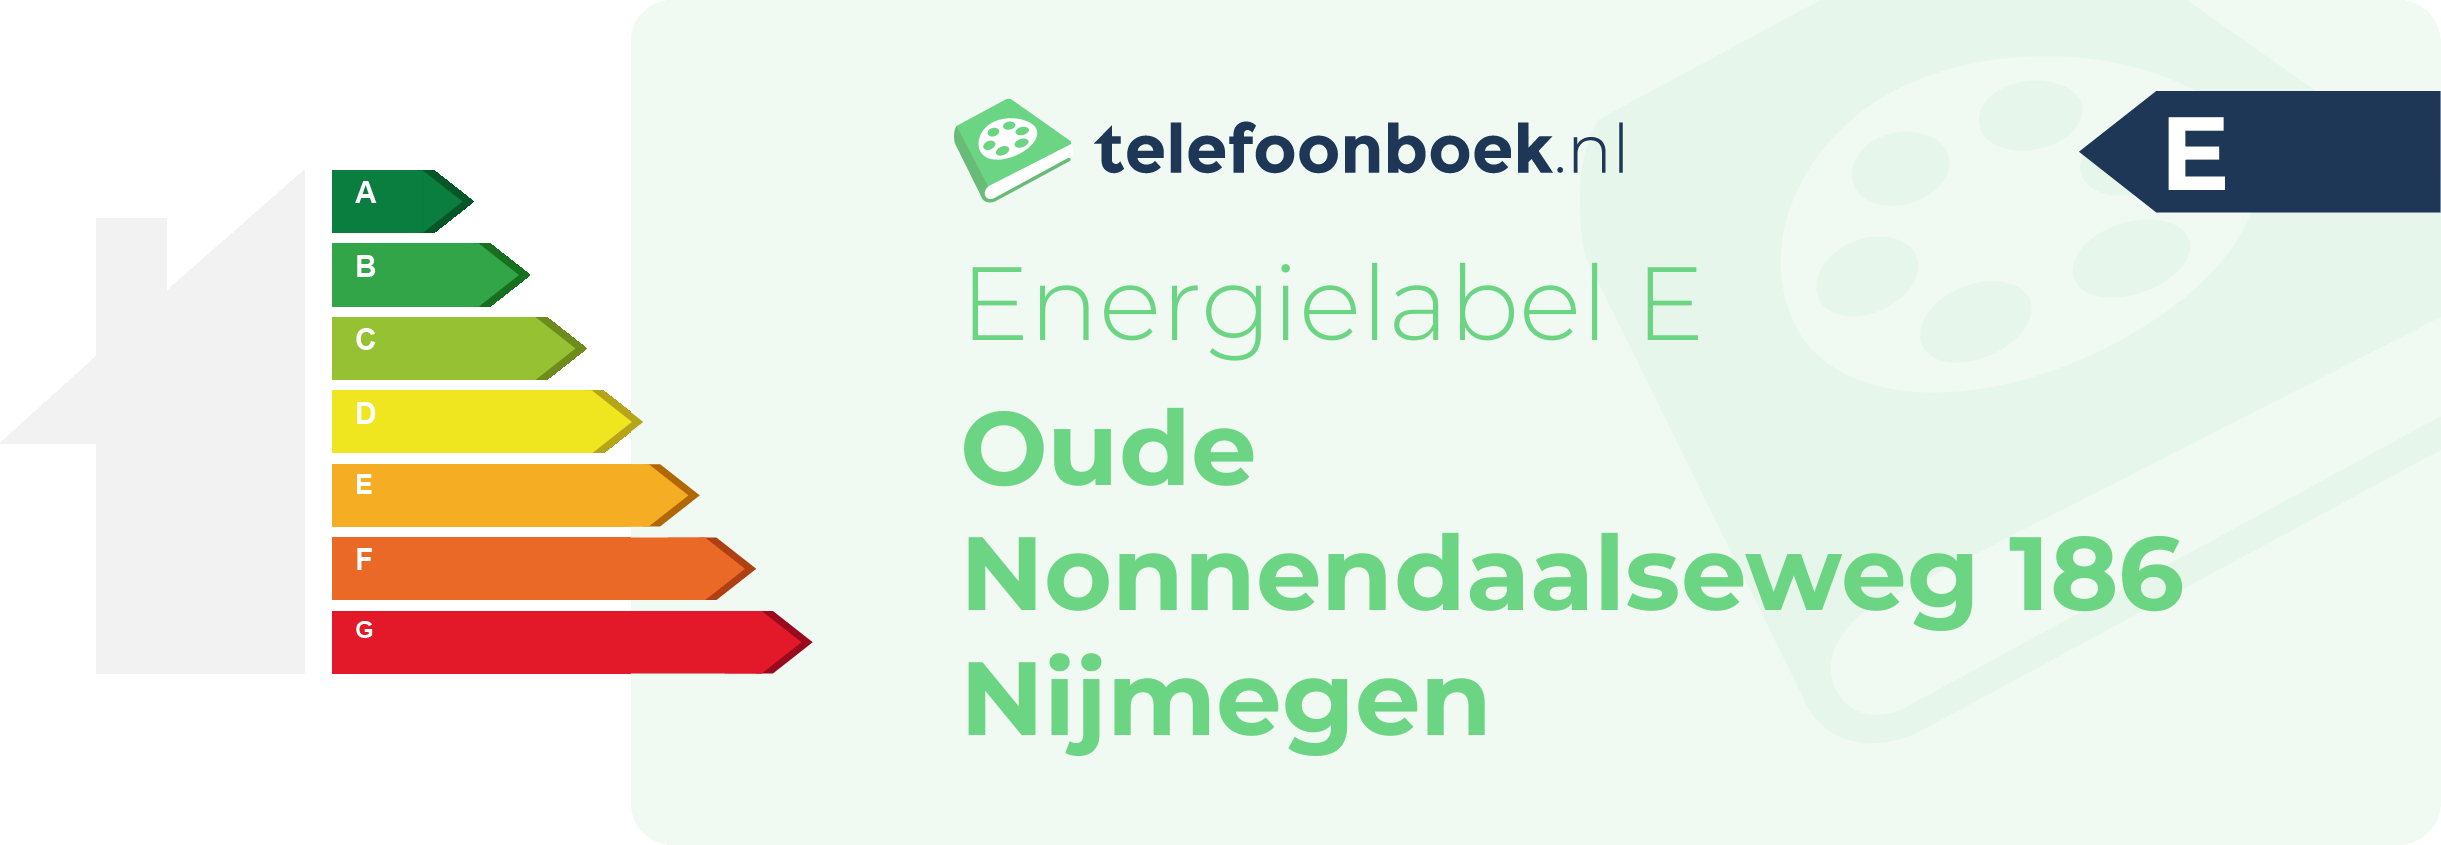 Energielabel Oude Nonnendaalseweg 186 Nijmegen